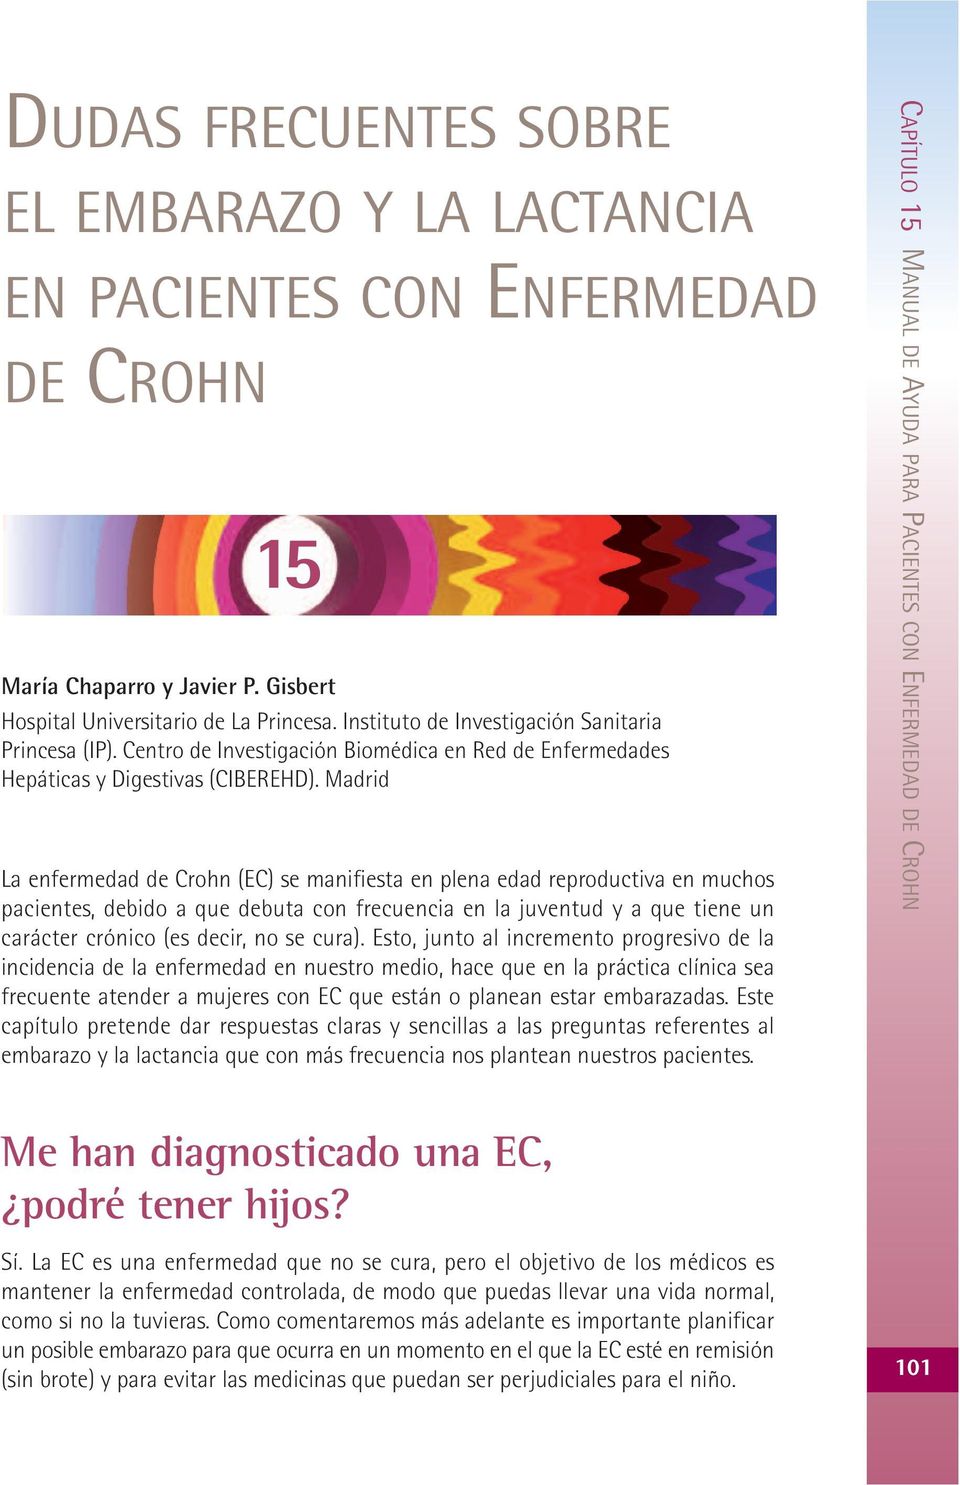 Madrid La enfermedad de Crohn (EC) se manifiesta en plena edad reproductiva en muchos pacientes, debido a que debuta con frecuencia en la juventud y a que tiene un carácter crónico (es decir, no se